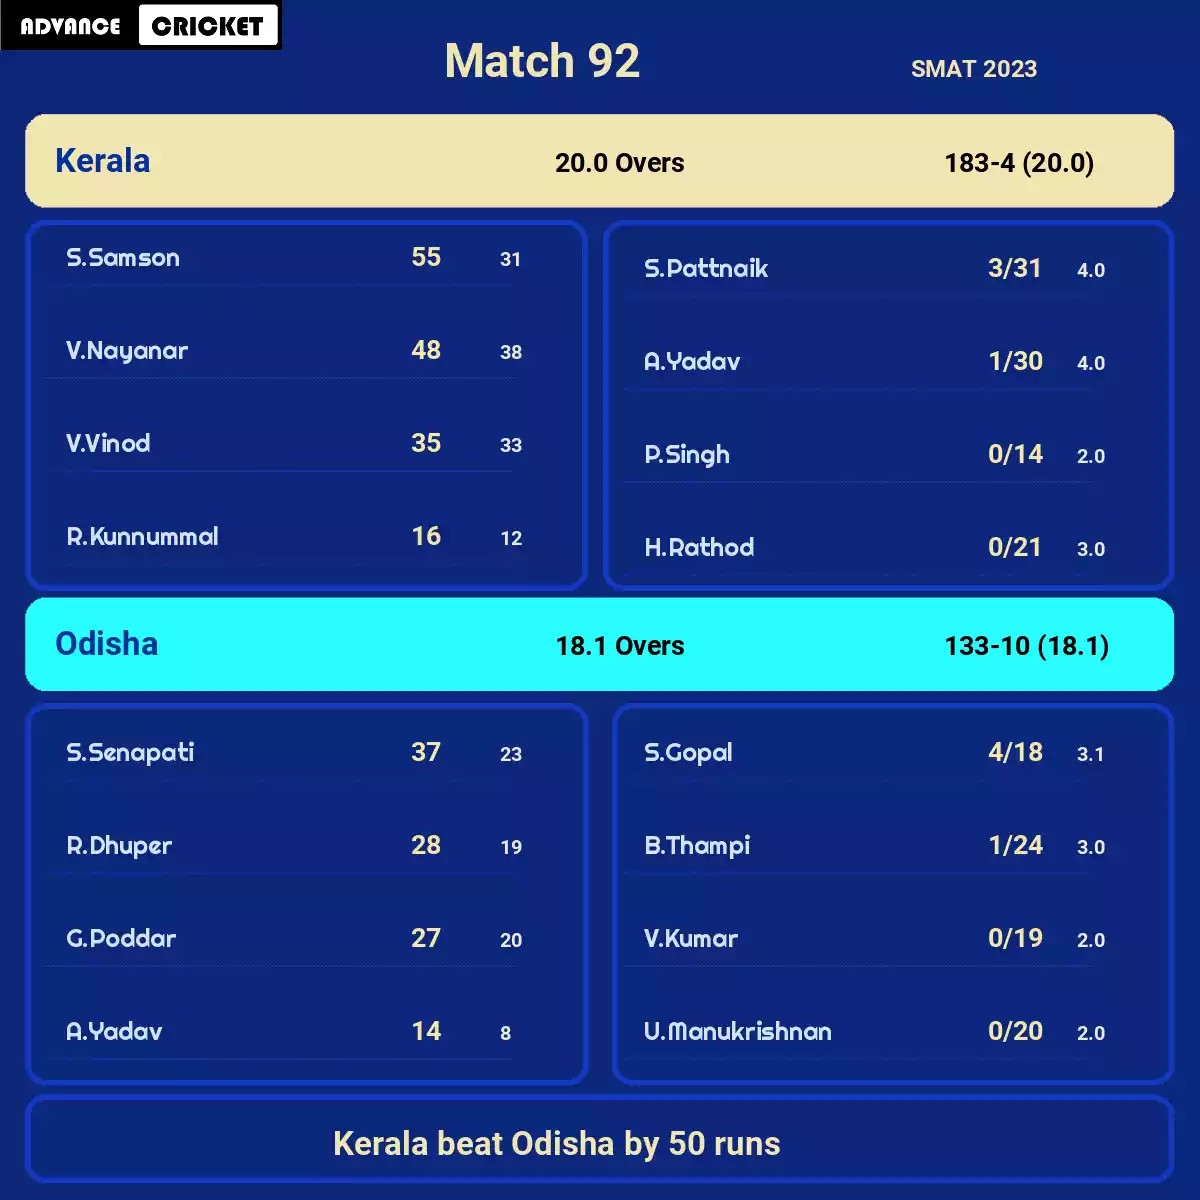 KER vs ODS Match 92 SMAT 2023